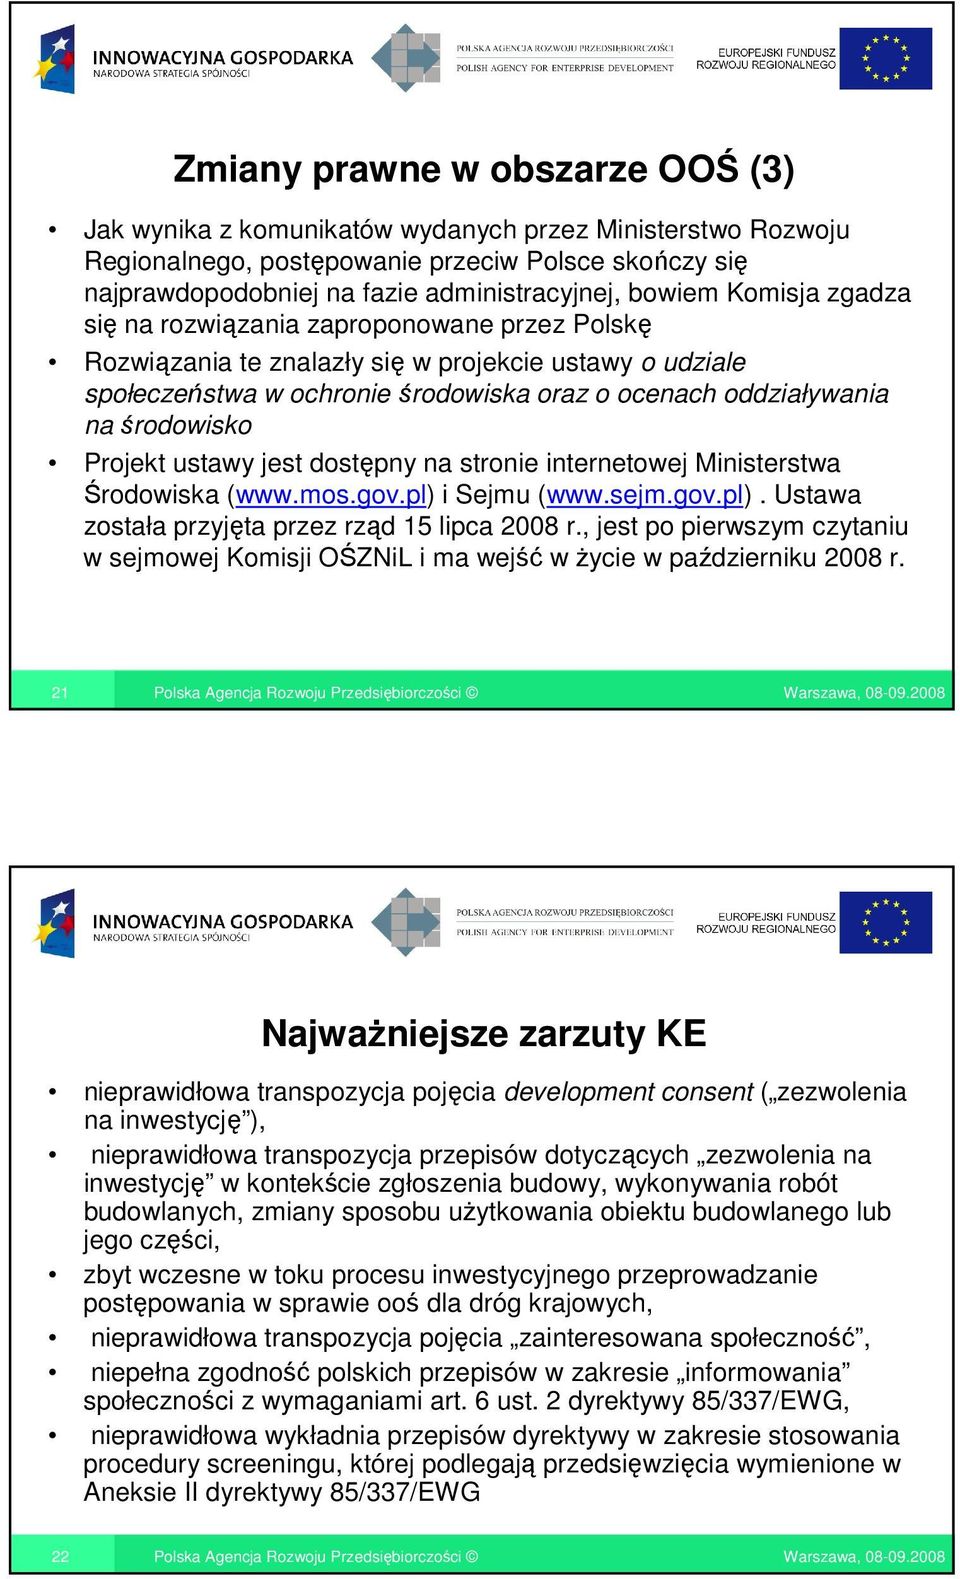 środowisko Projekt ustawy jest dostępny na stronie internetowej Ministerstwa Środowiska (www.mos.gov.pl) i Sejmu (www.sejm.gov.pl). Ustawa została przyjęta przez rząd 15 lipca 2008 r.